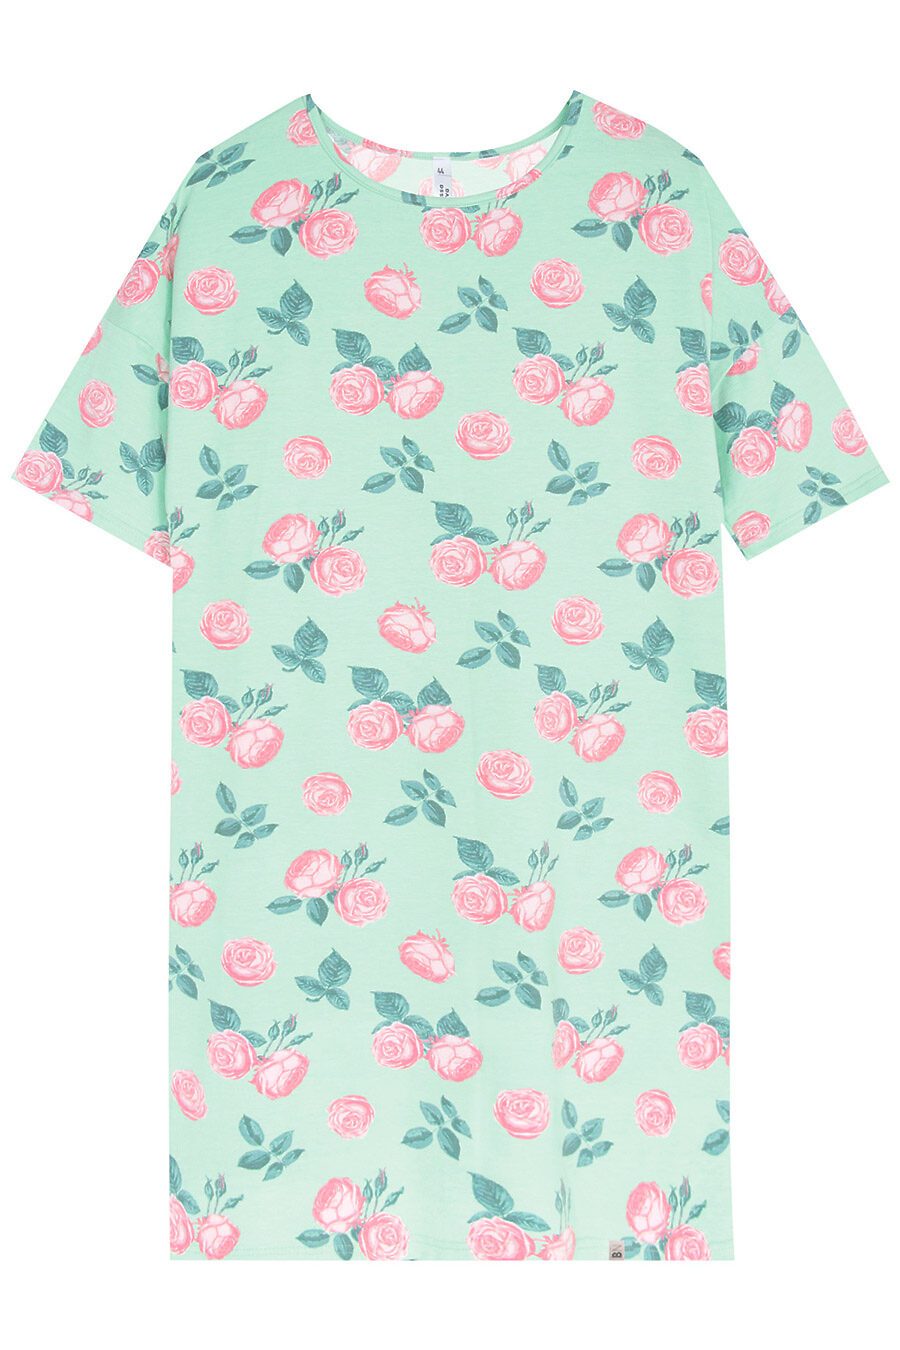 Сорочка для женщин BOSSA NOVA 708538 купить оптом от производителя. Совместная покупка женской одежды в OptMoyo